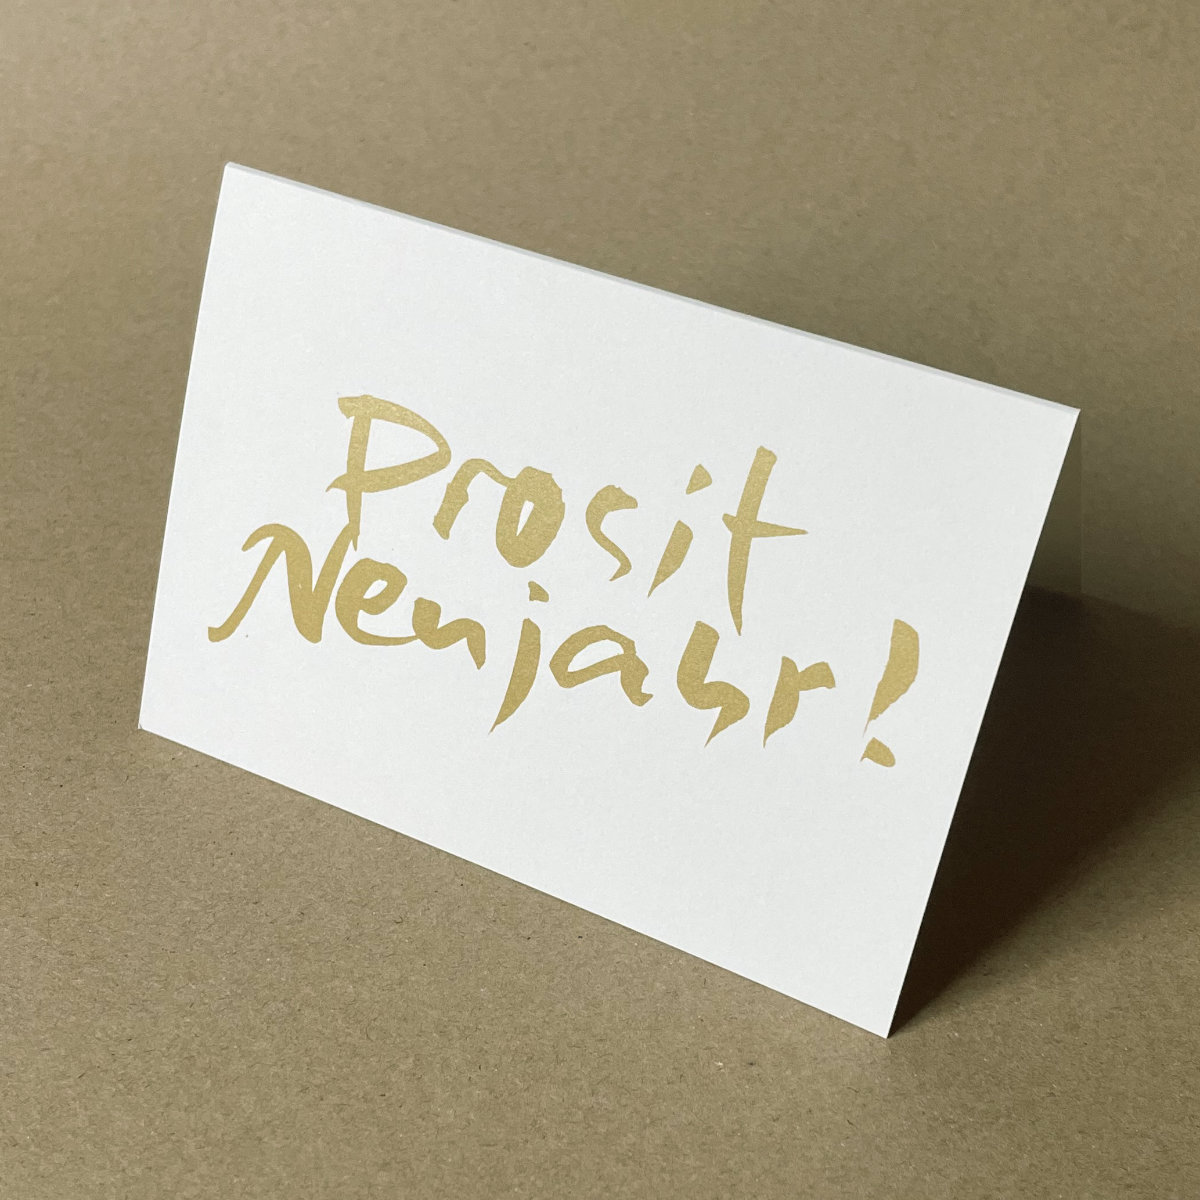 Prosit Neujahr! - Neujahrskarten mit schwungvoller, goldener Kalligrafie